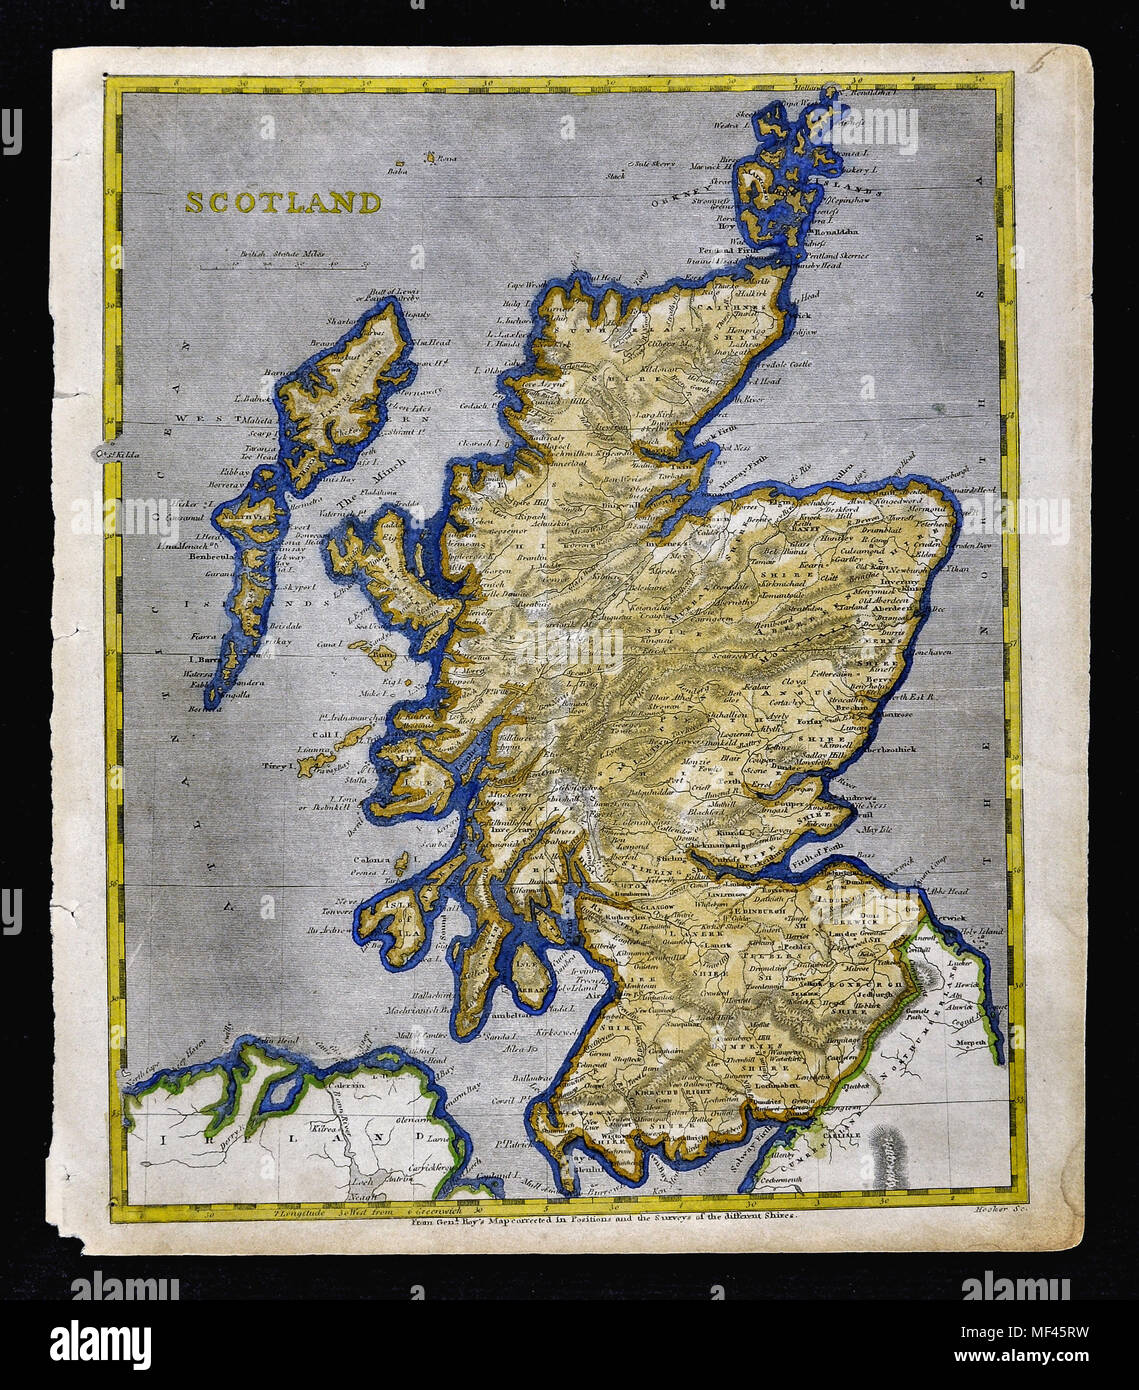 1804 Arrowsmith Map - Scotland - Edinburgh Glasgow Loch Ness Inverness Orkney Islands Stock Photo